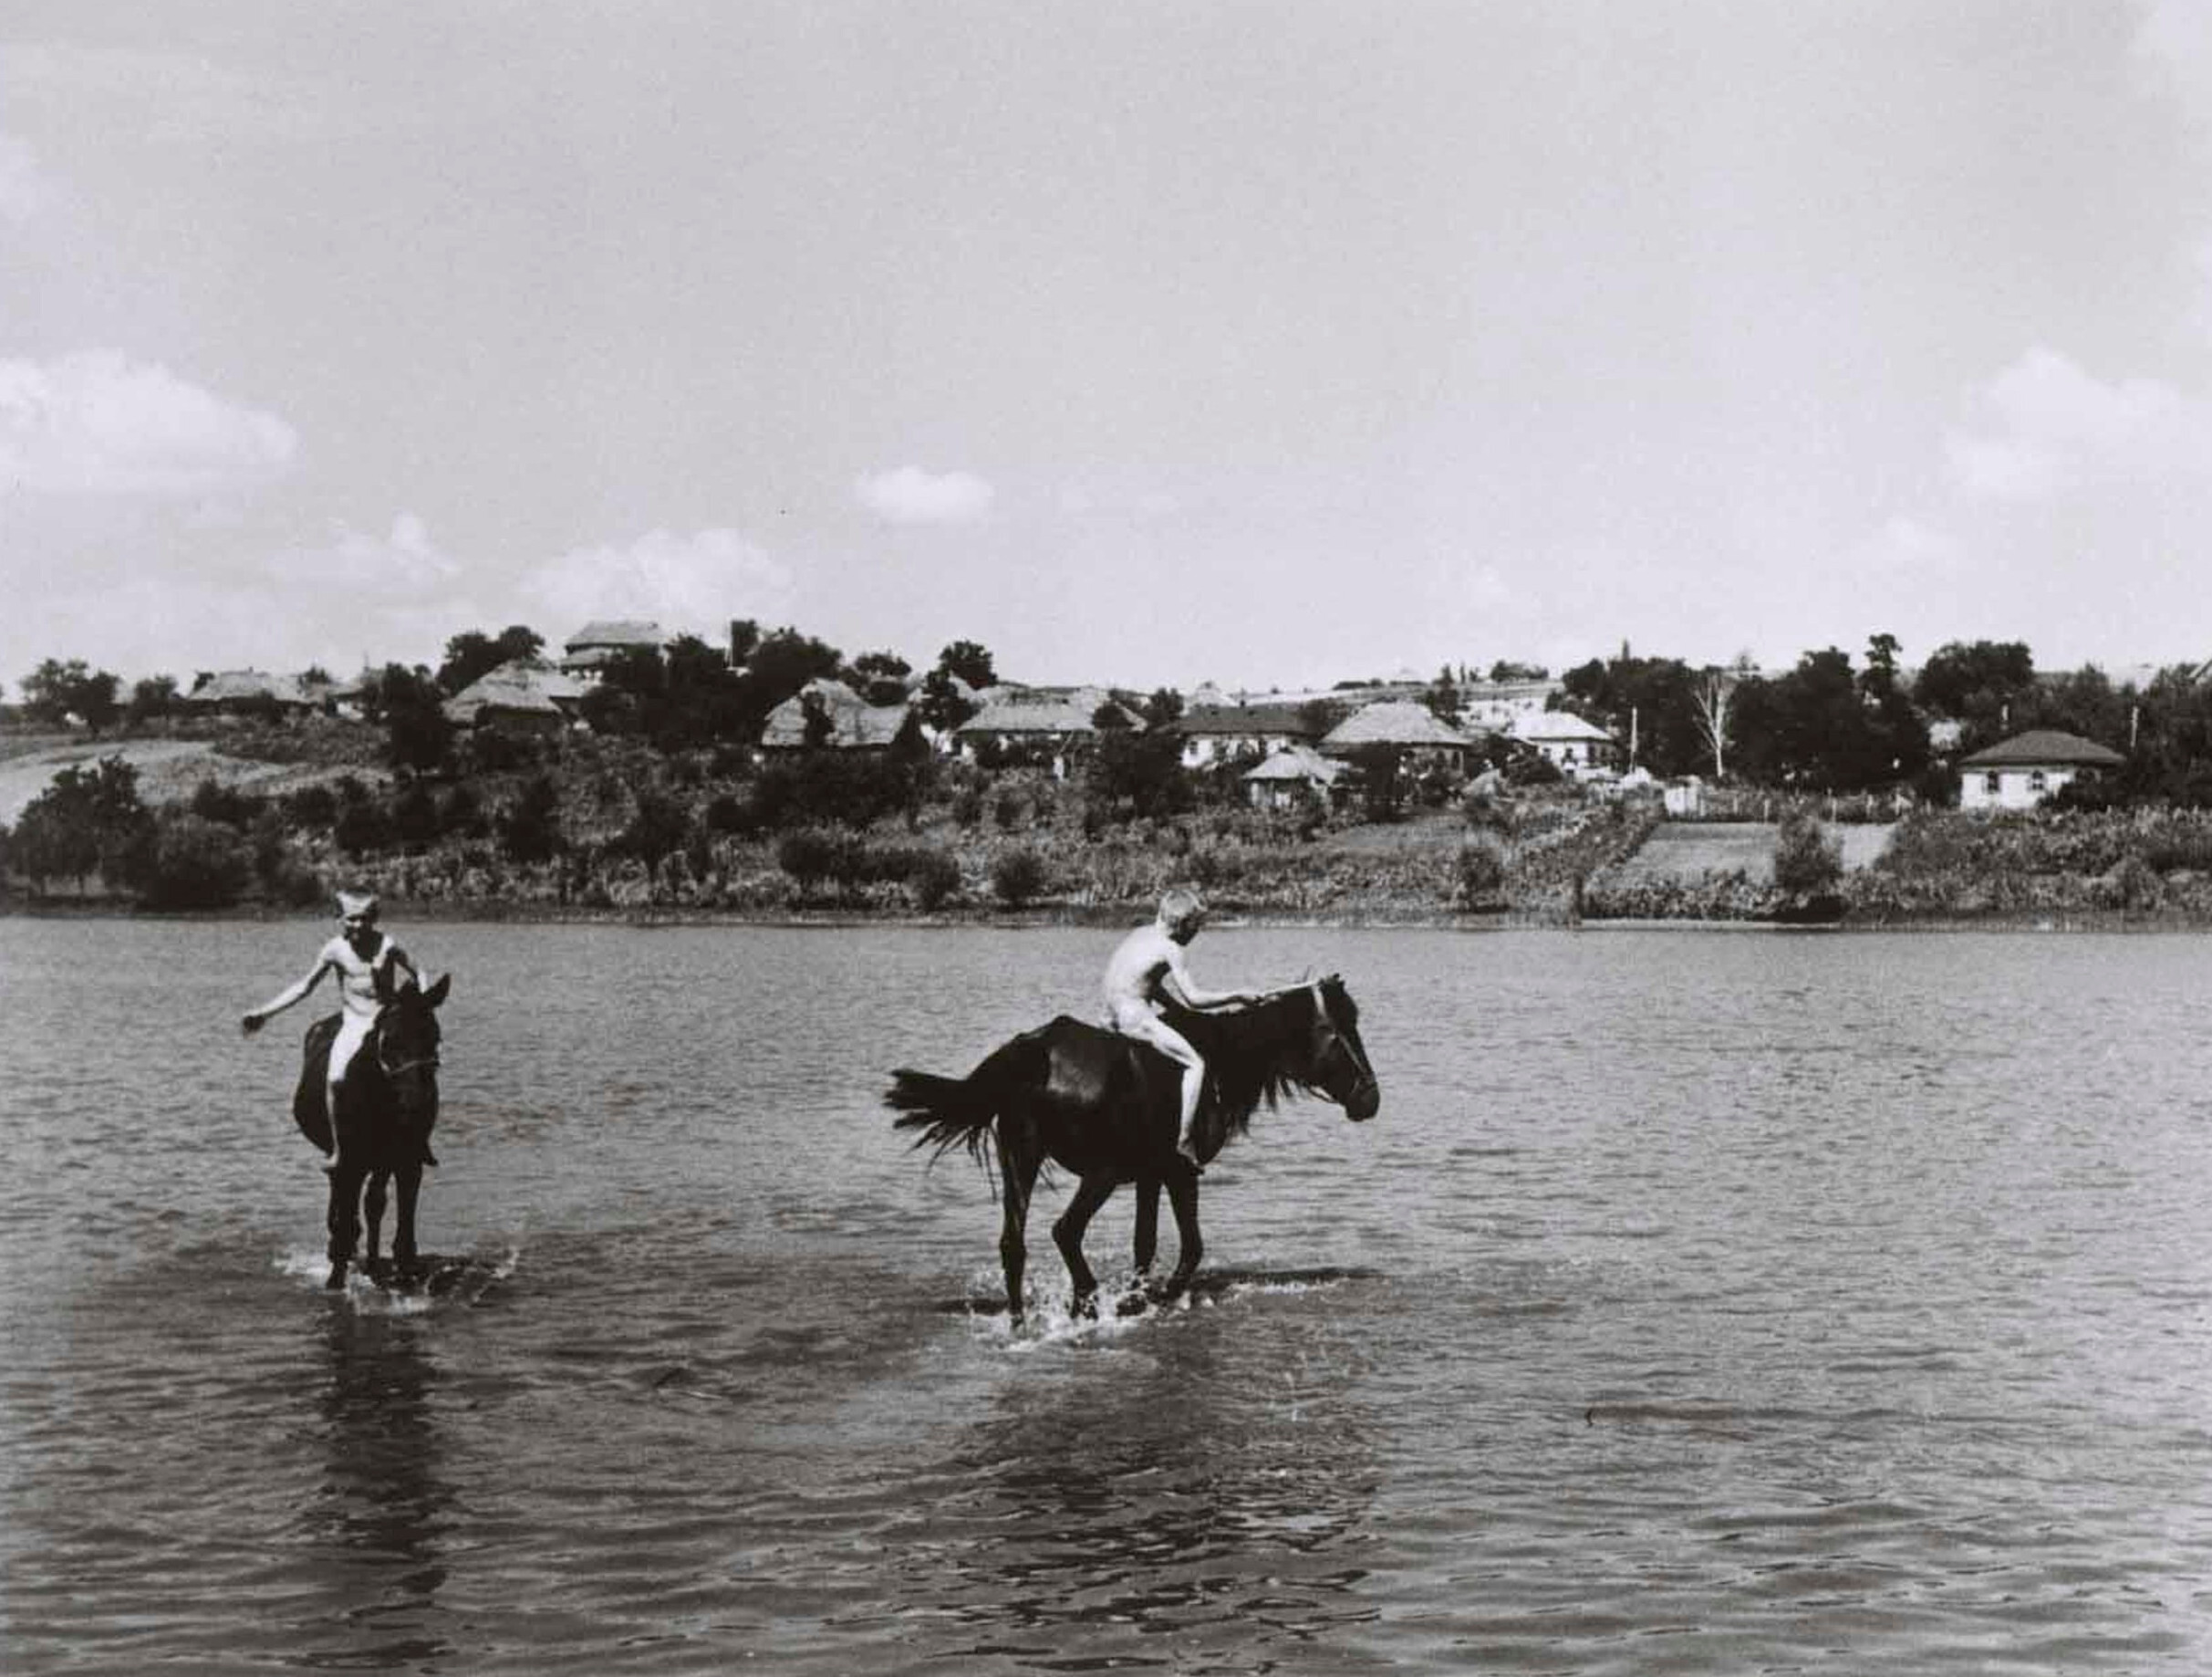 На в озере в колхозе, Украина, август 1947 года. Фотограф Роберт Капа